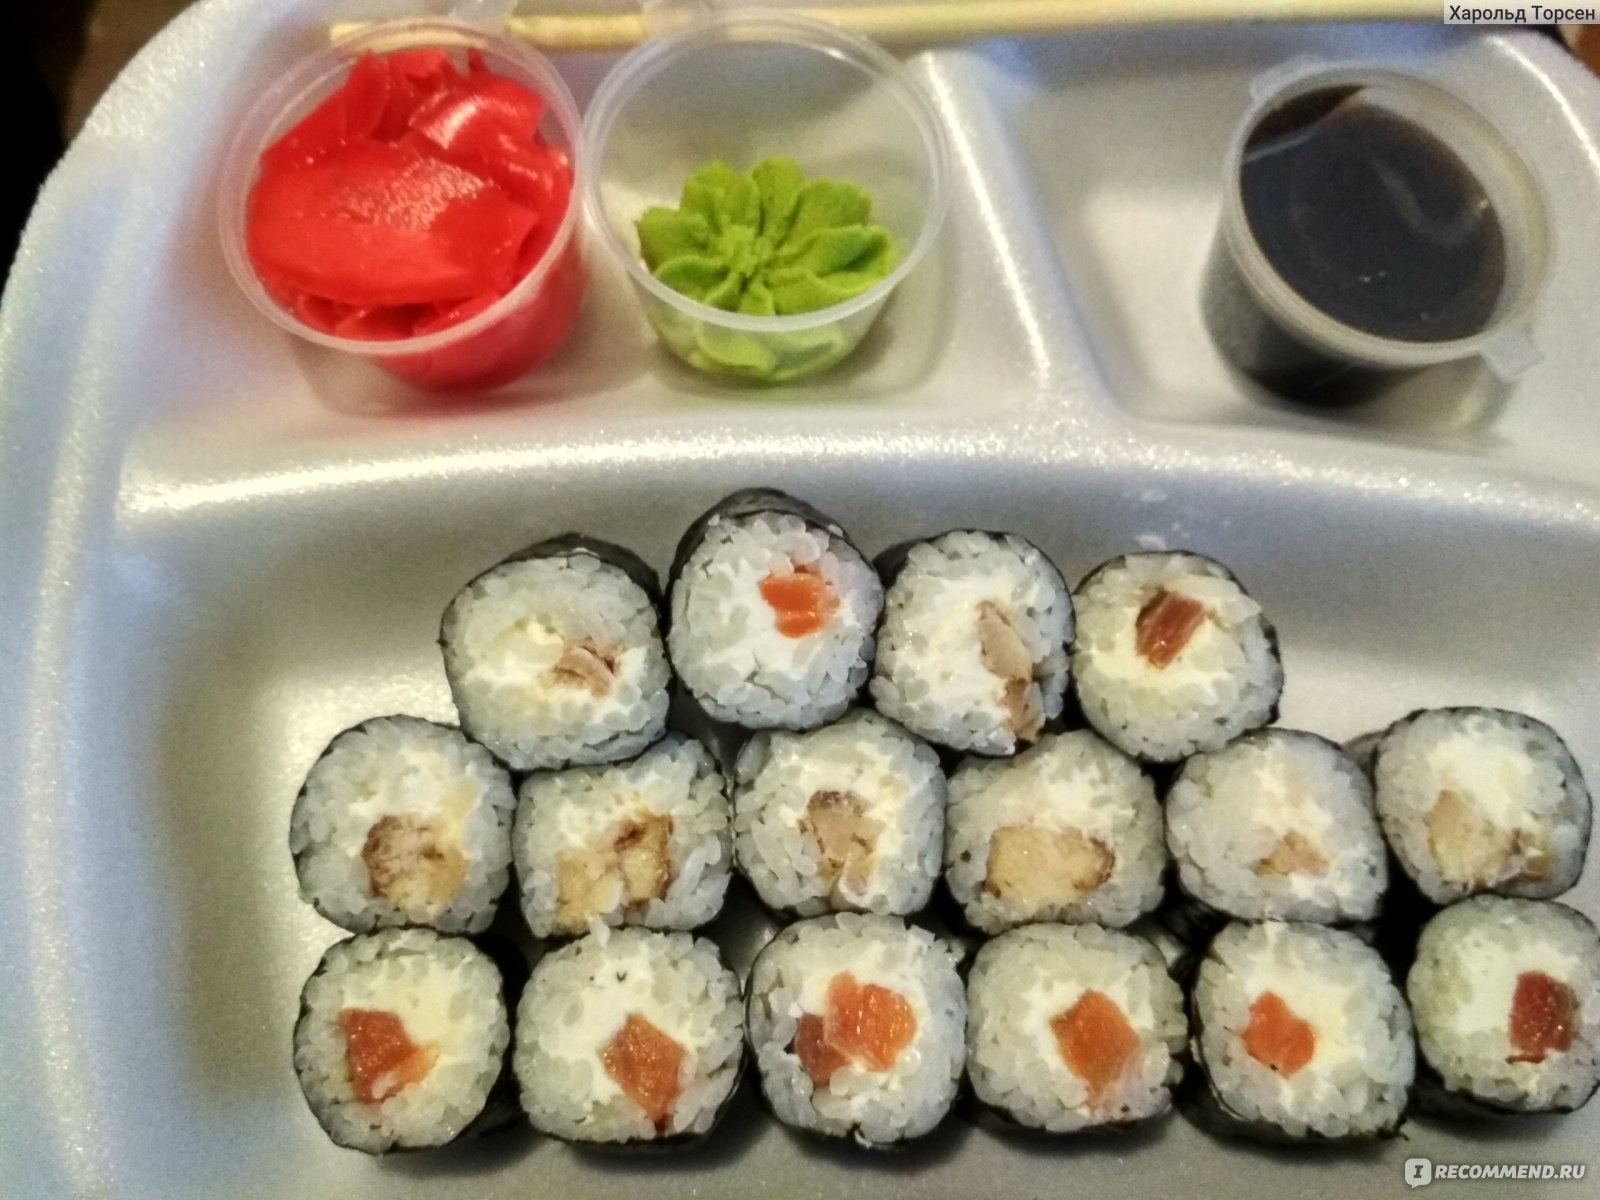 Отзывы о суши в тюмень фото 87